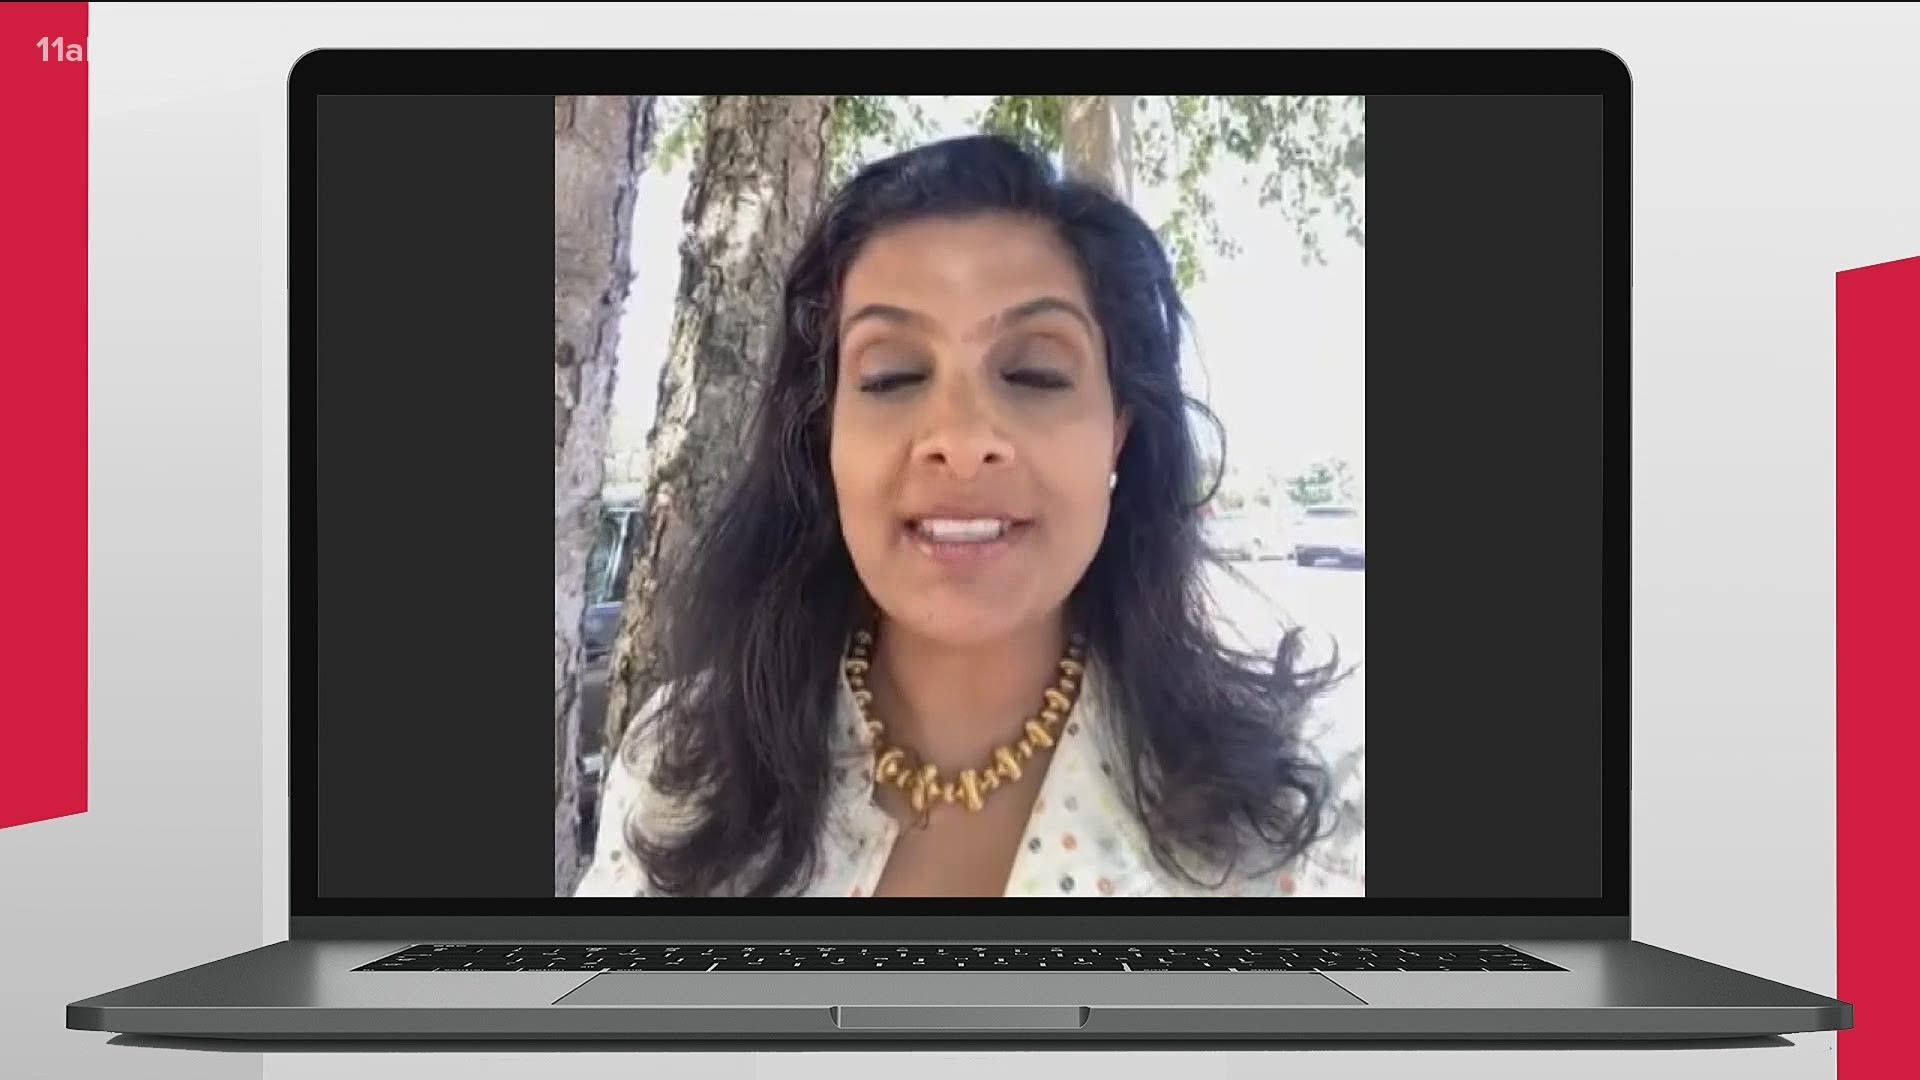 11Alive medical correspondent Dr. Sujatha Reddy explains.